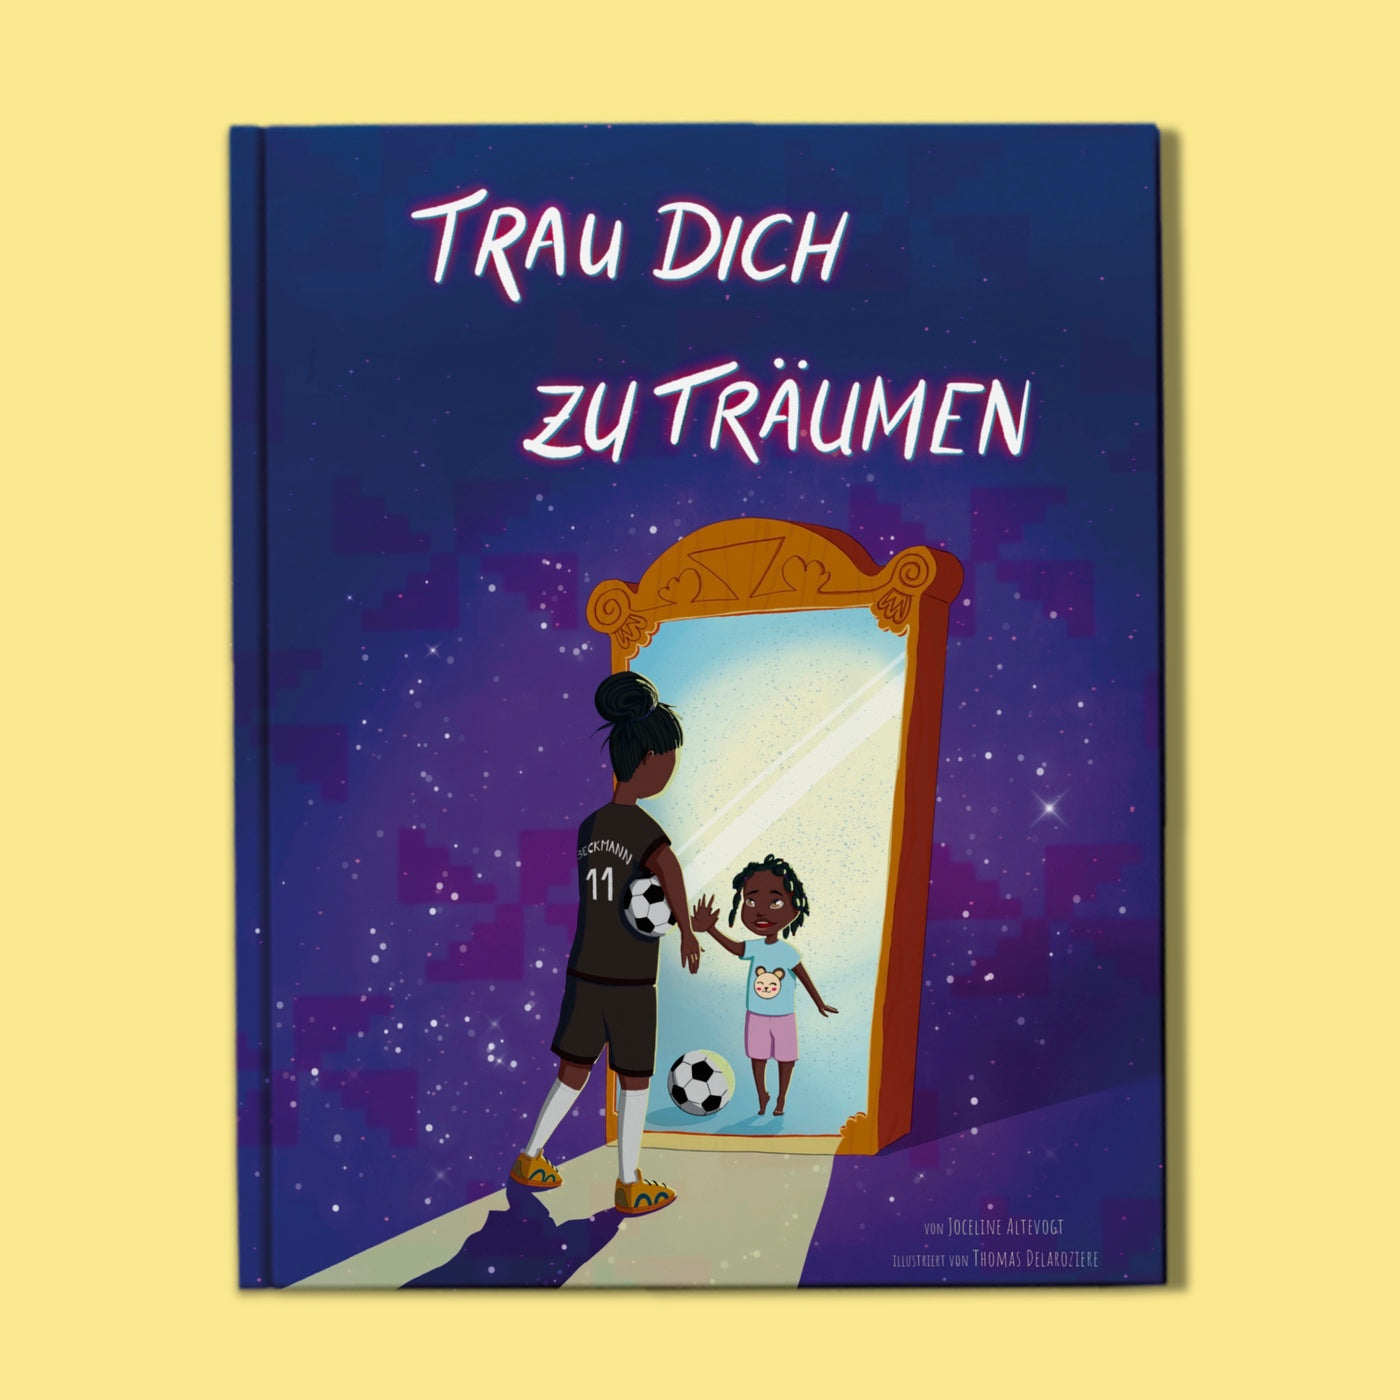 Das Cover vom Buch "Trau dich zu Träumen" zeigt auf dunkelblauem Hintergrund mit Sternen die Illustration von einem Spiegel. Im Spiegelbild zu sehen ist ein kleines Kind mit Fußball. Vor dem Spiegel steht eine erwachsene Frau in Fußballklamotten und Fußball unter dem Arm. 